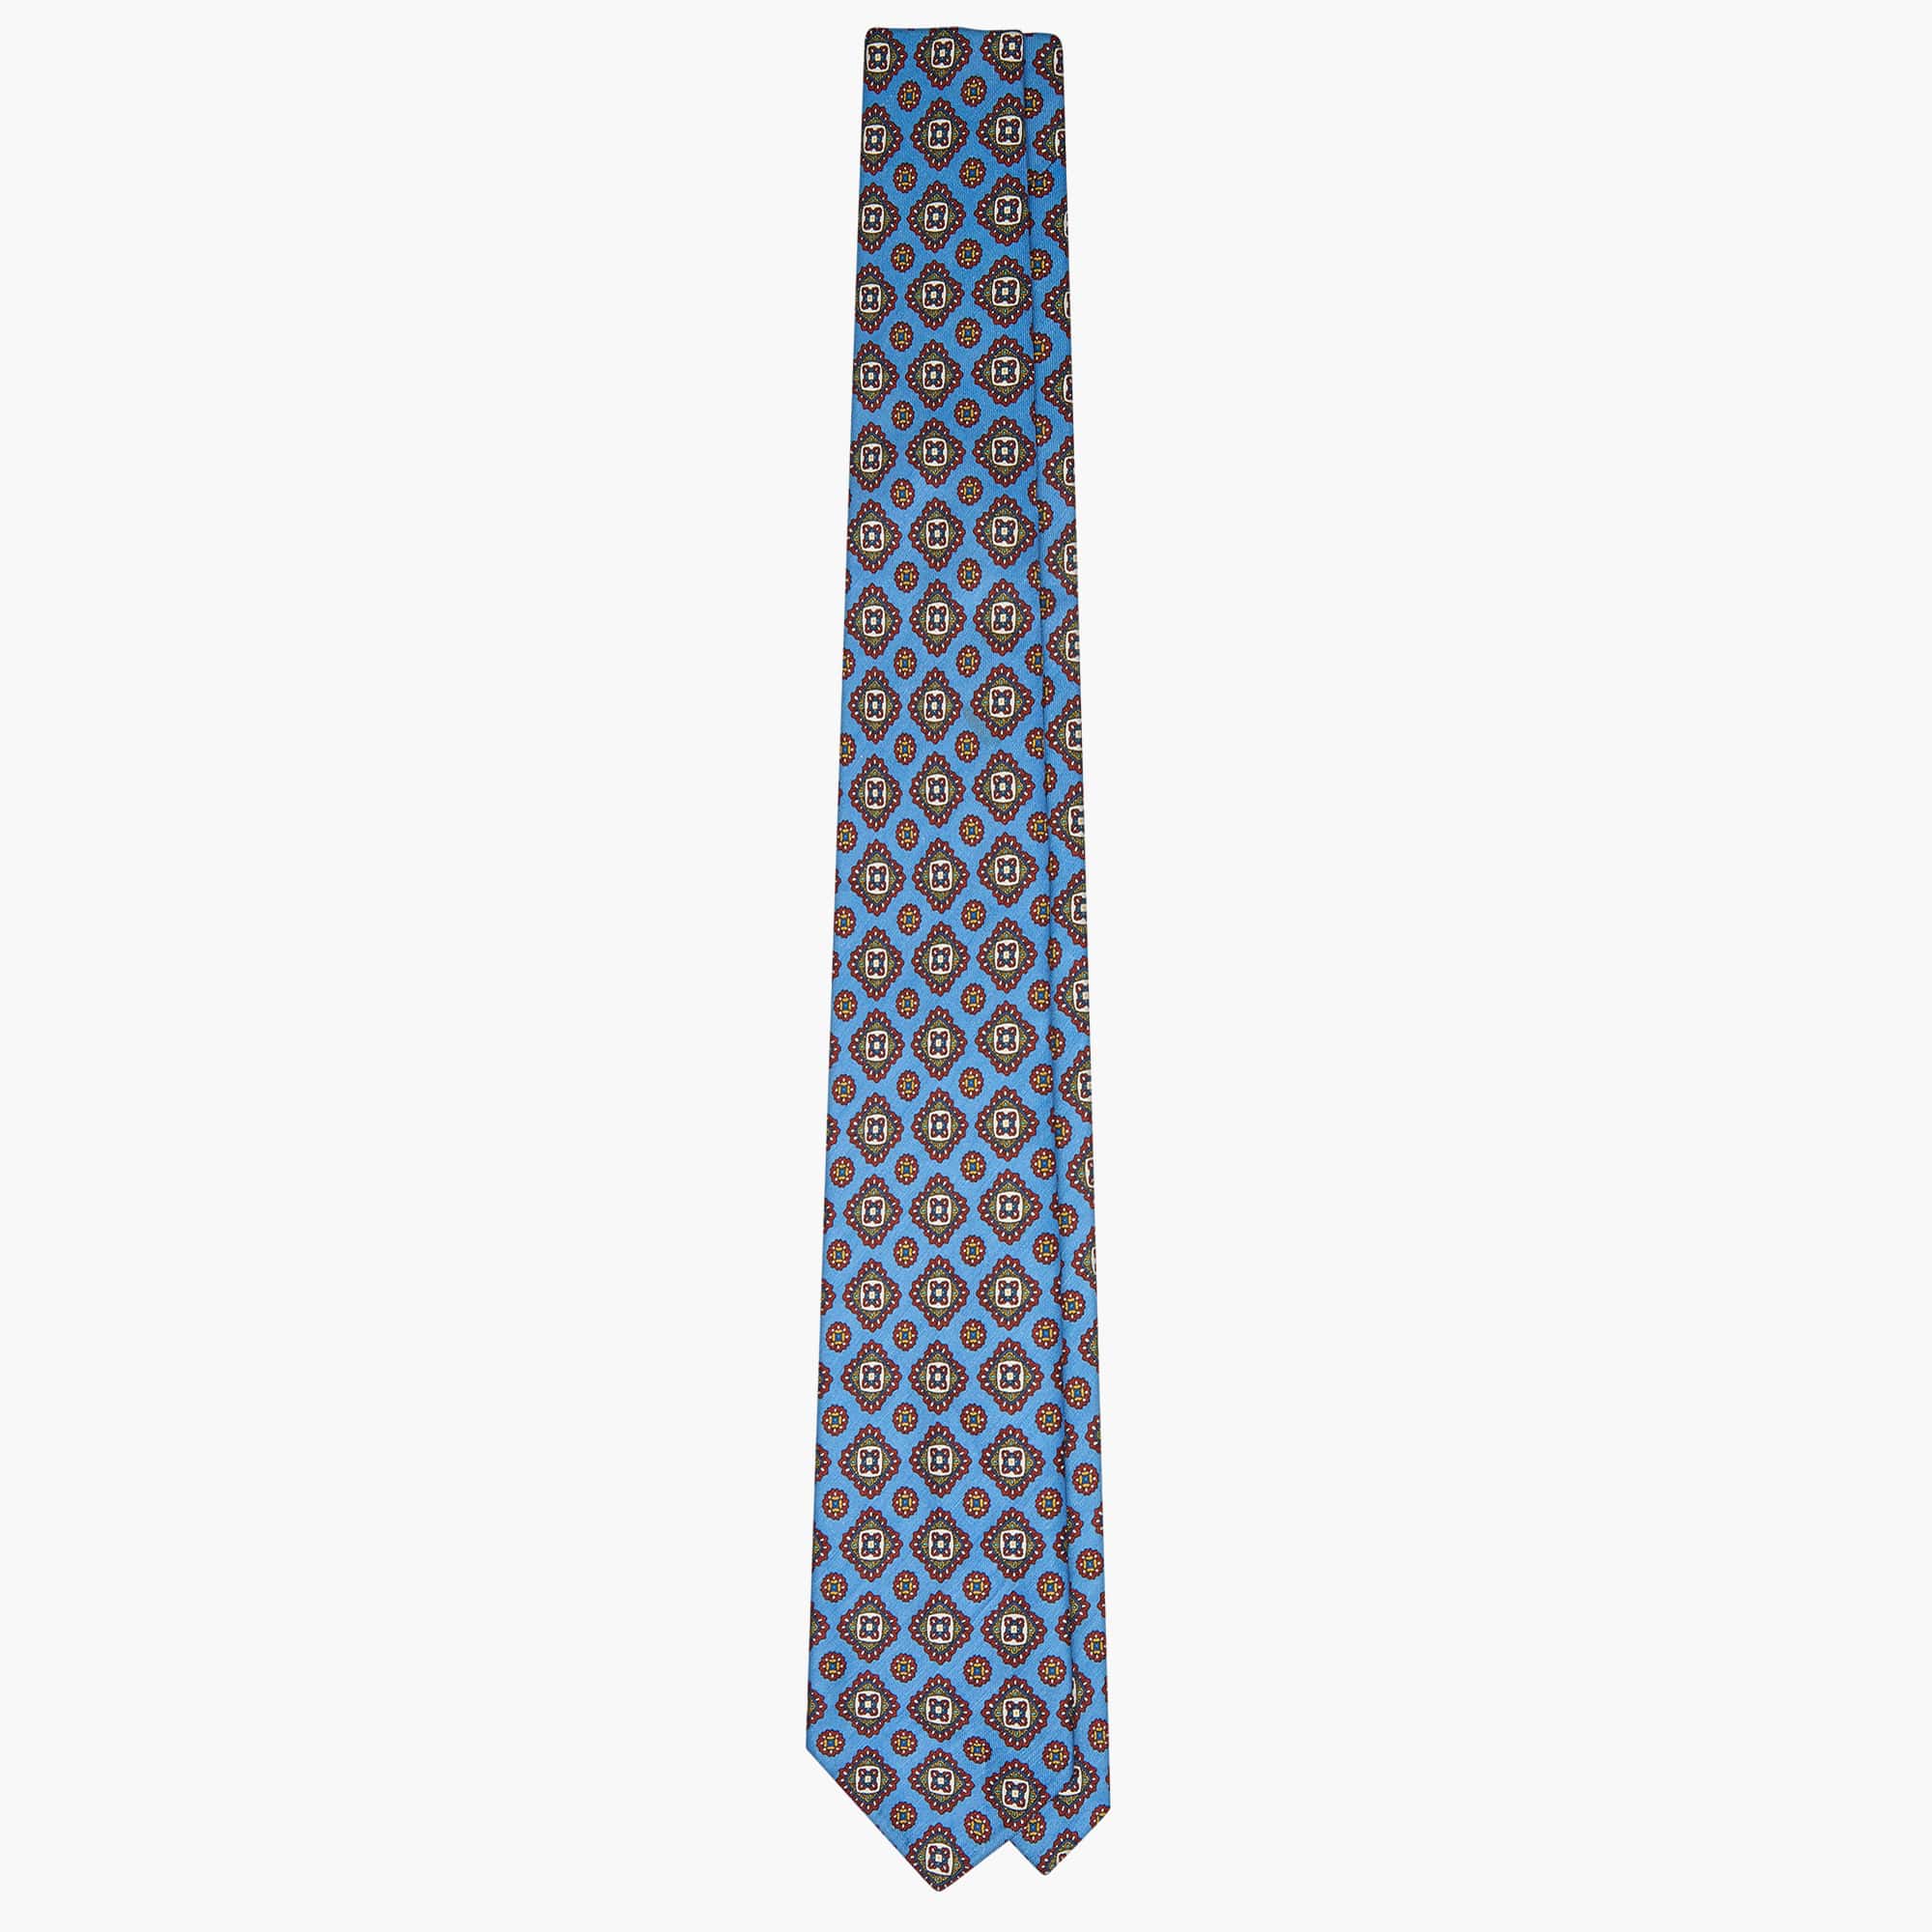 Cravatta 3 Pieghe in Seta Lino Floreale - Blu